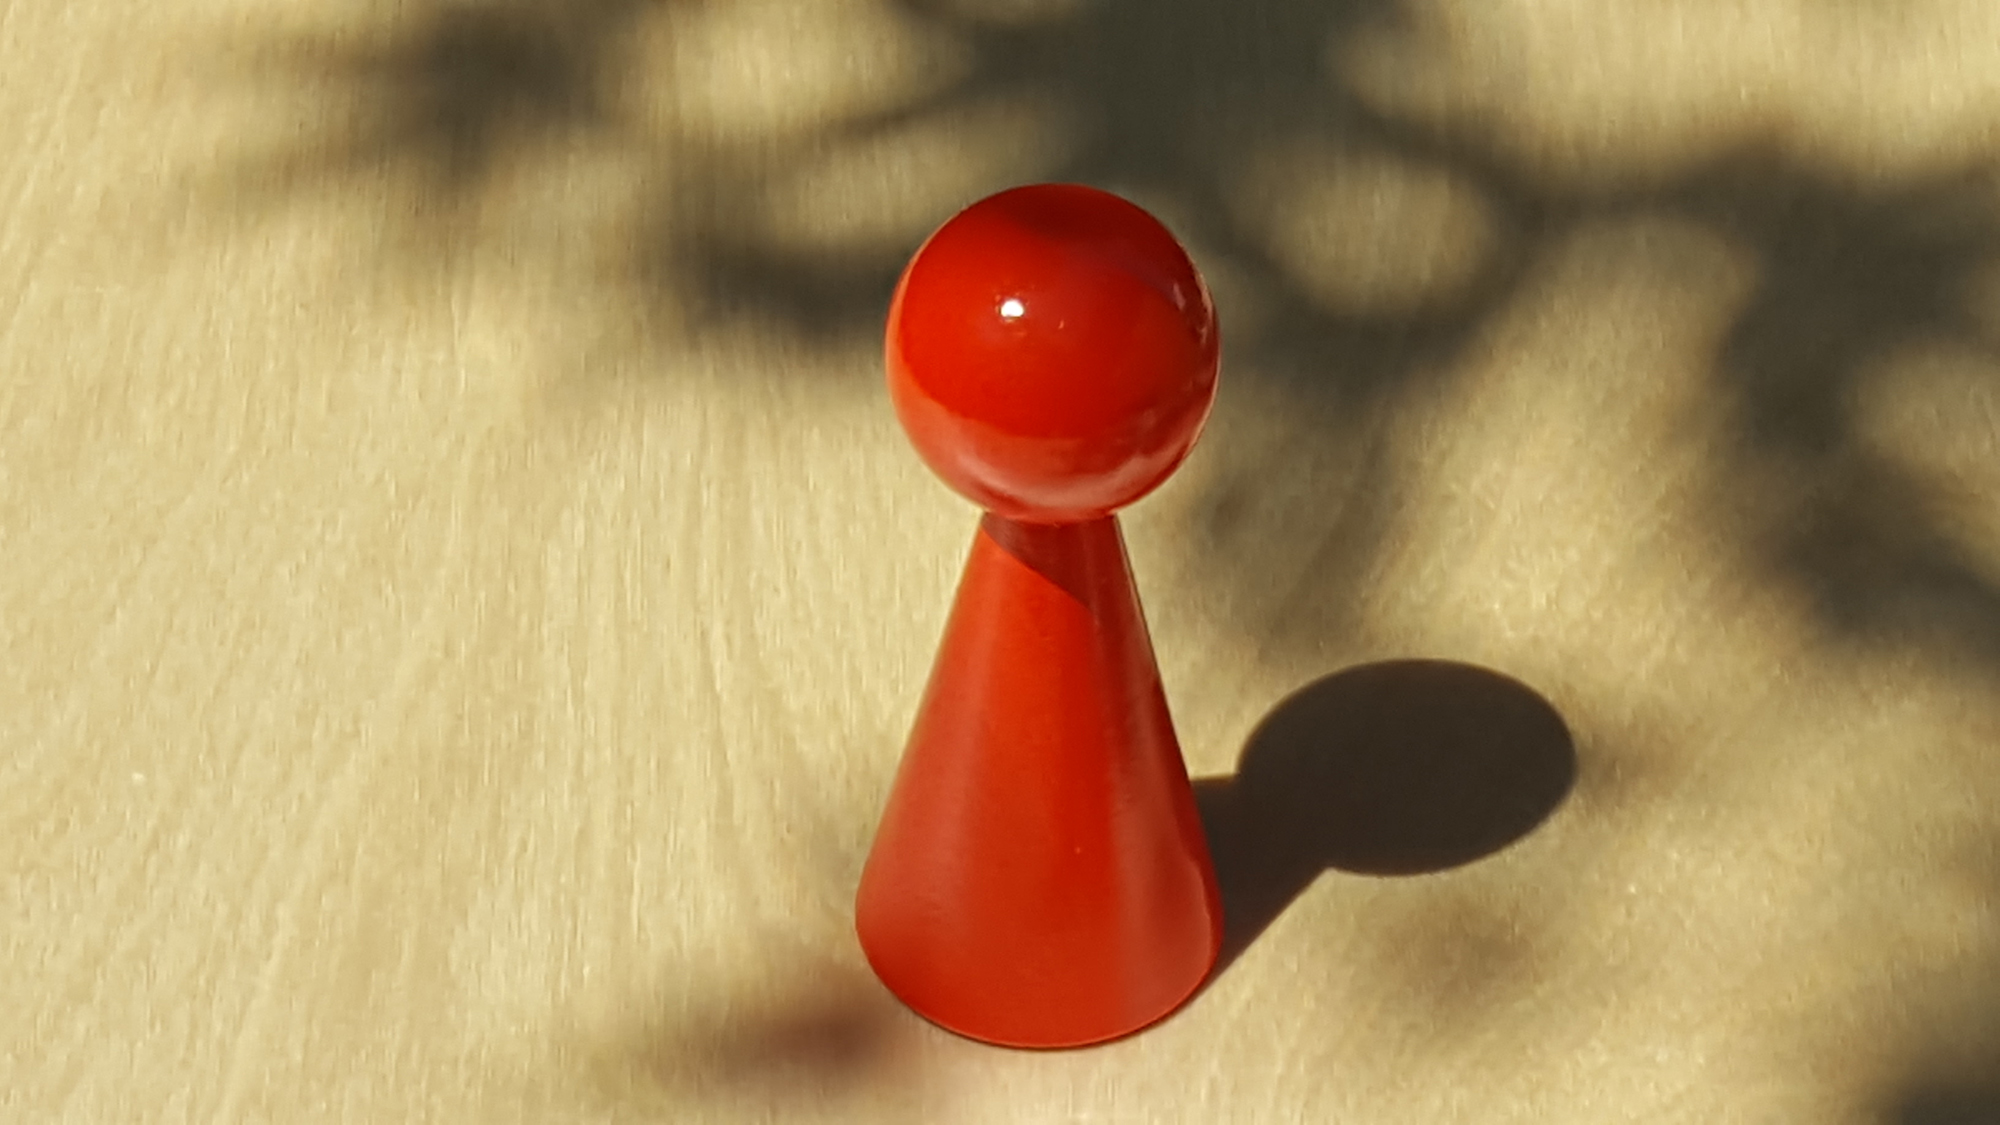 www.systembrett.at · Systembrett-Artikel · Einzel-Figur 10 cm in rot (ohne Augen);